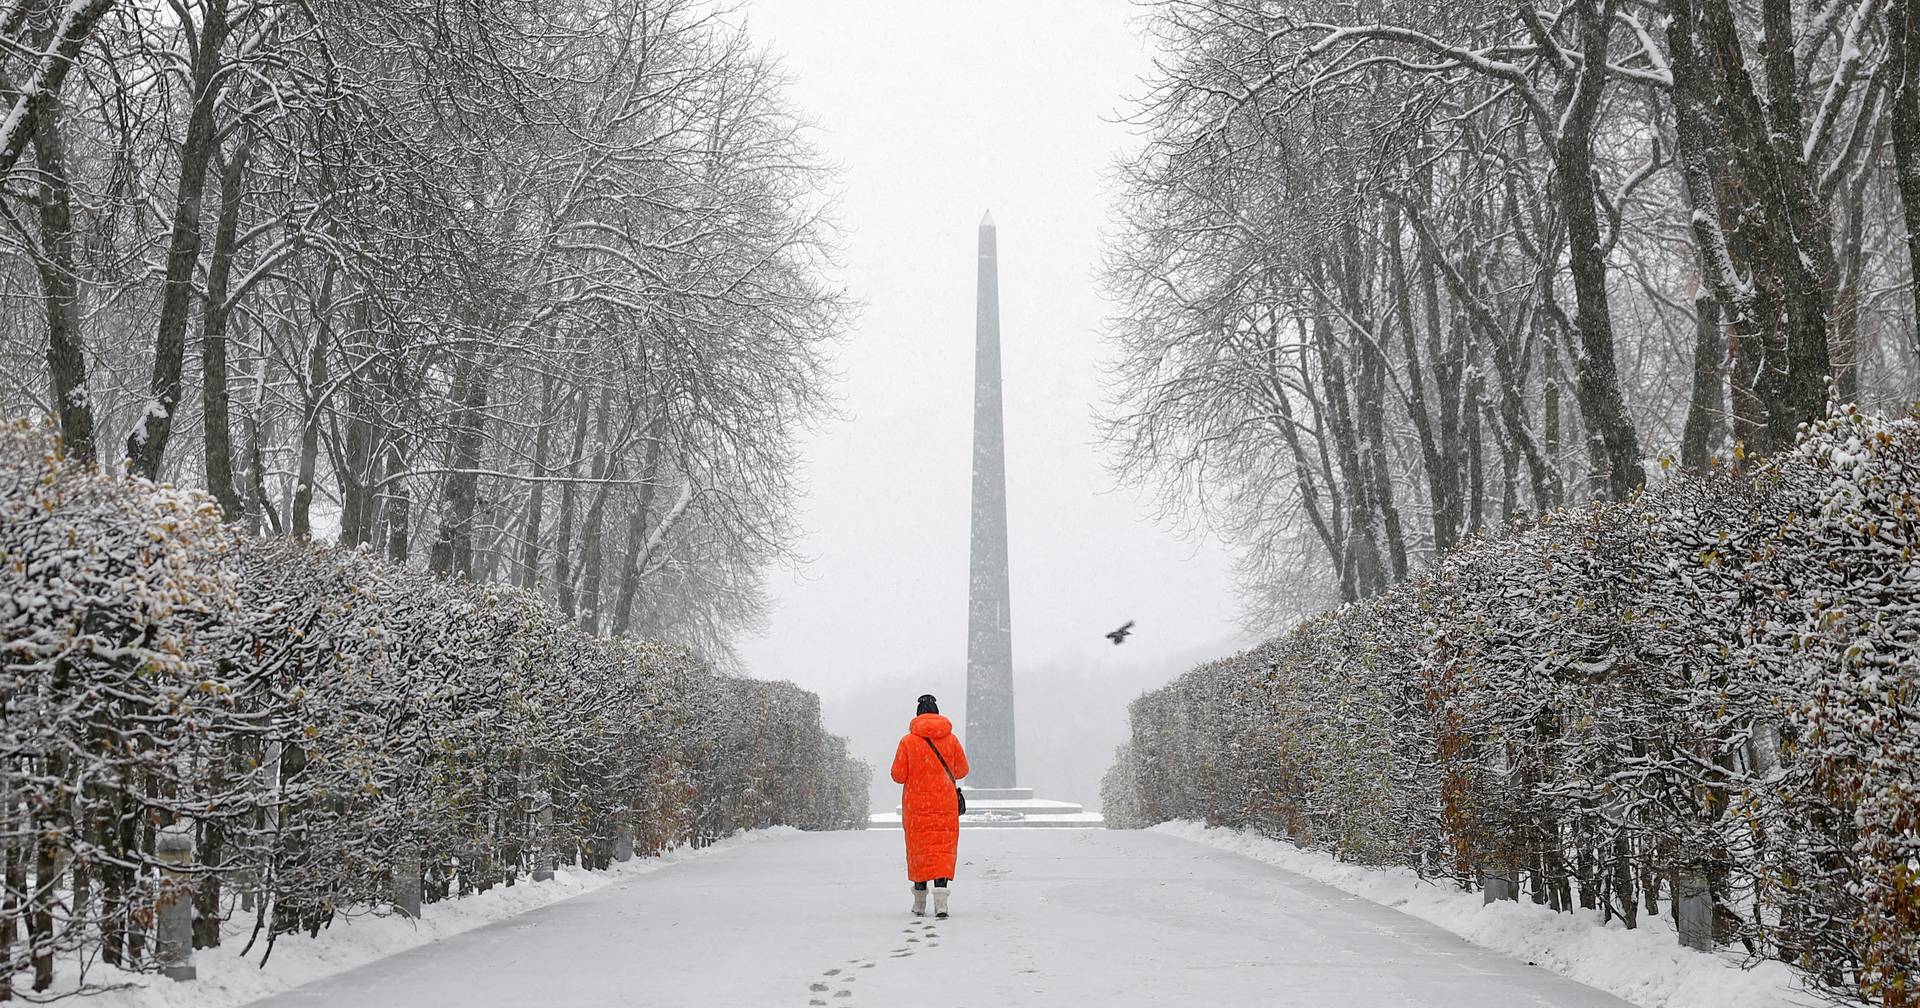 Vaga de frio na Europa: cidades cobertas de neve - SIC Notícias